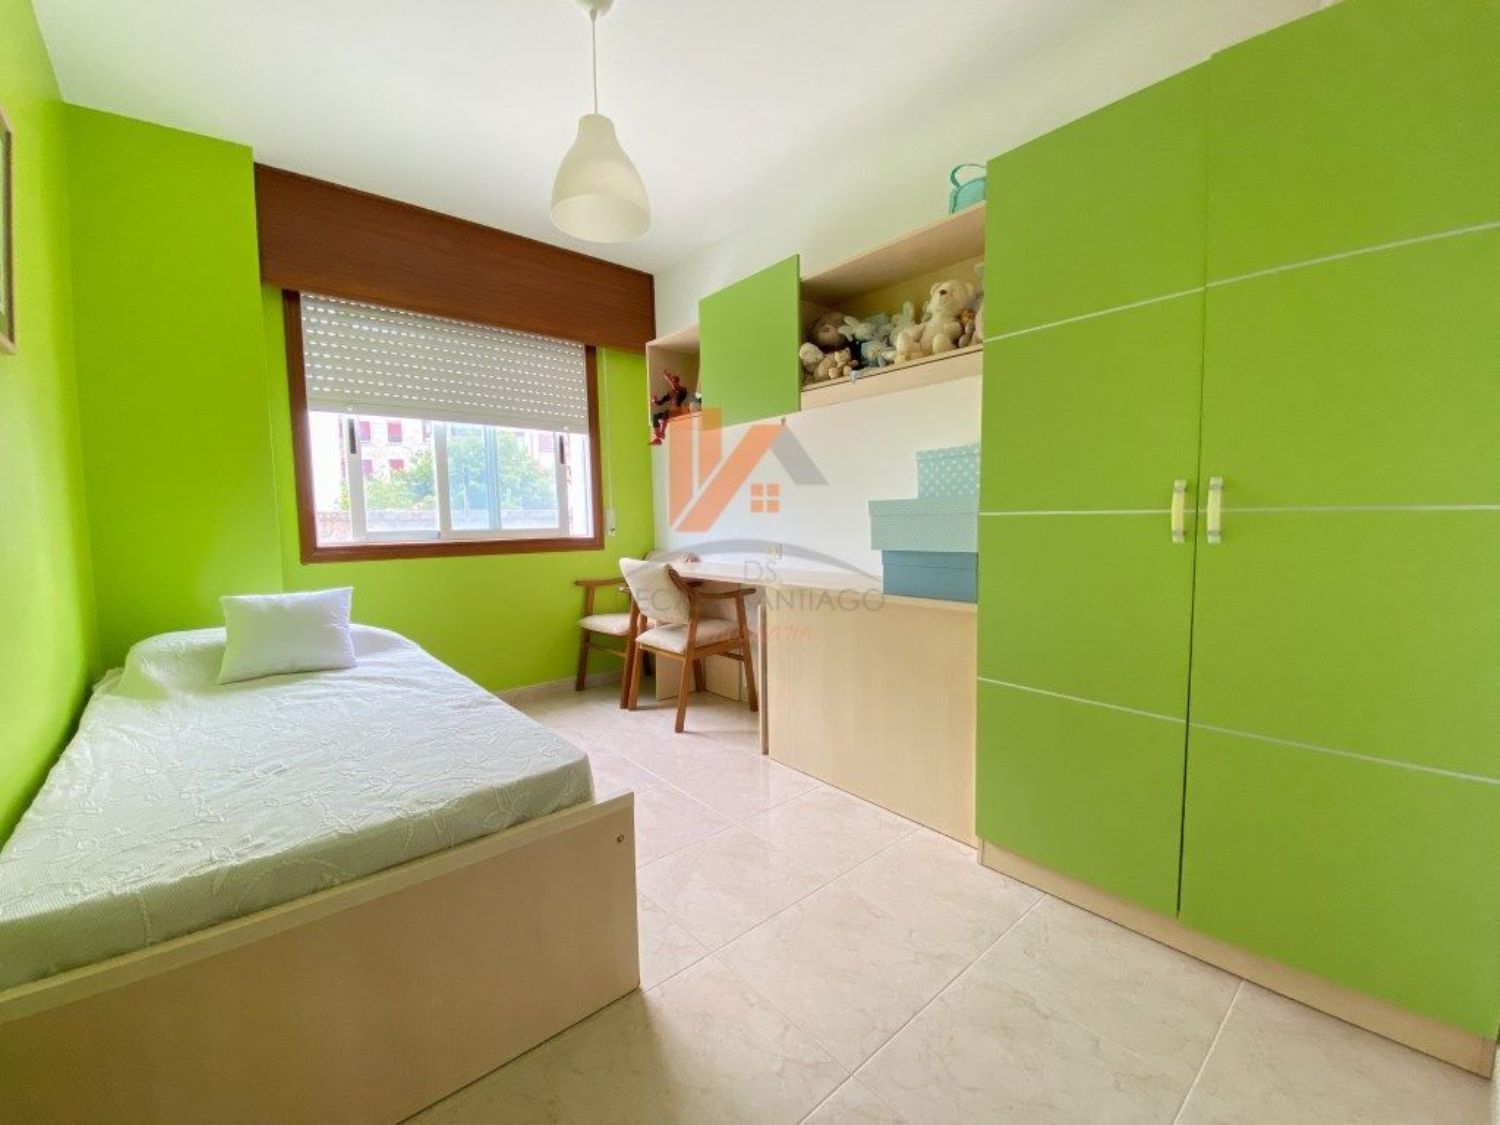 Apartament en venda a primera línia de mar a Calle Ram,bla a Porto do Son